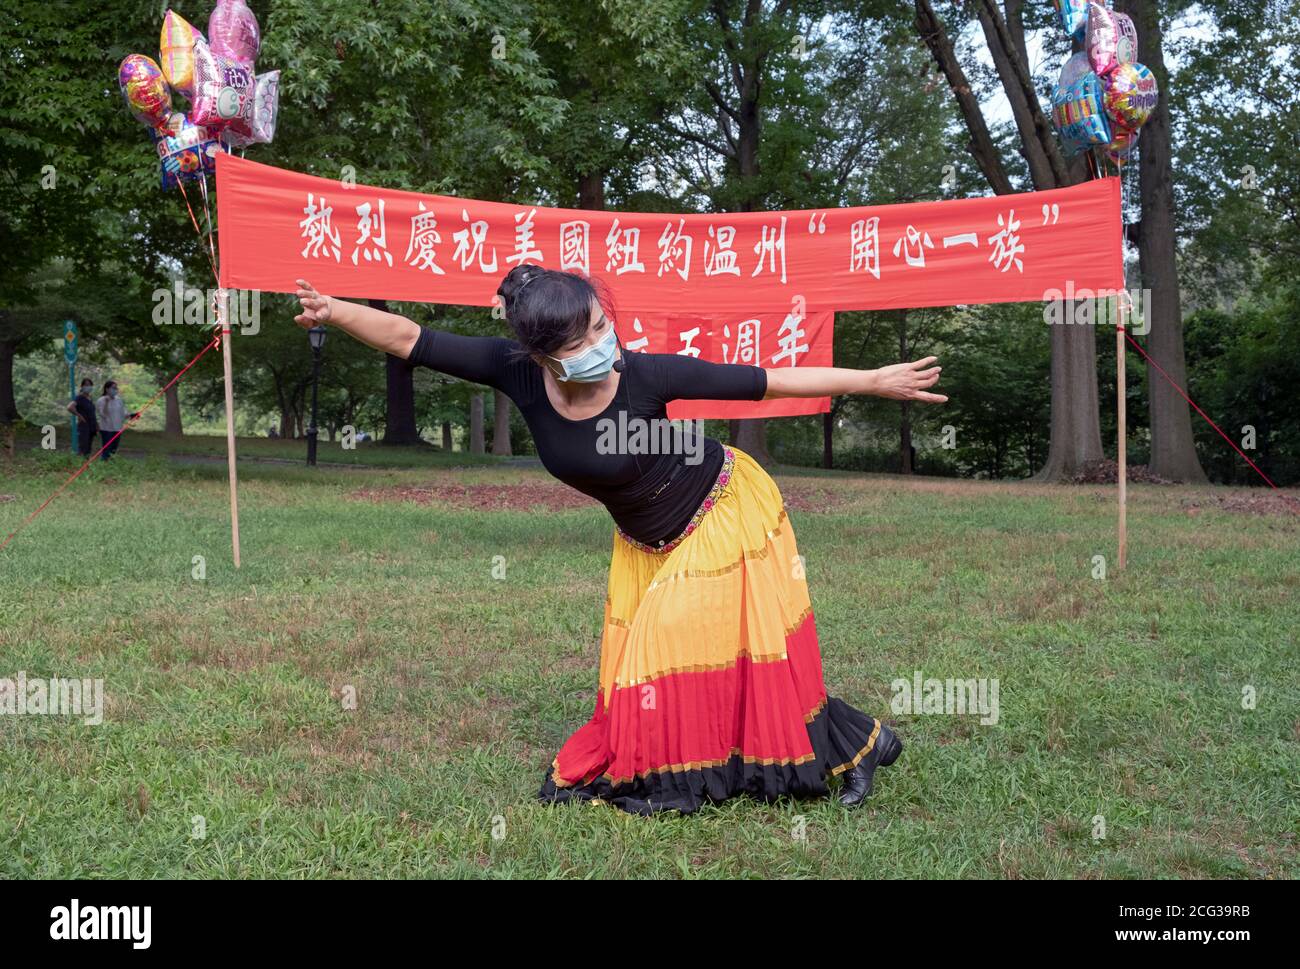 Portrait du chef d'un groupe de danse américain chinois, la troupe de Wenzhou America New York. Dans un parc de Flushing, Queens, New York. Banque D'Images